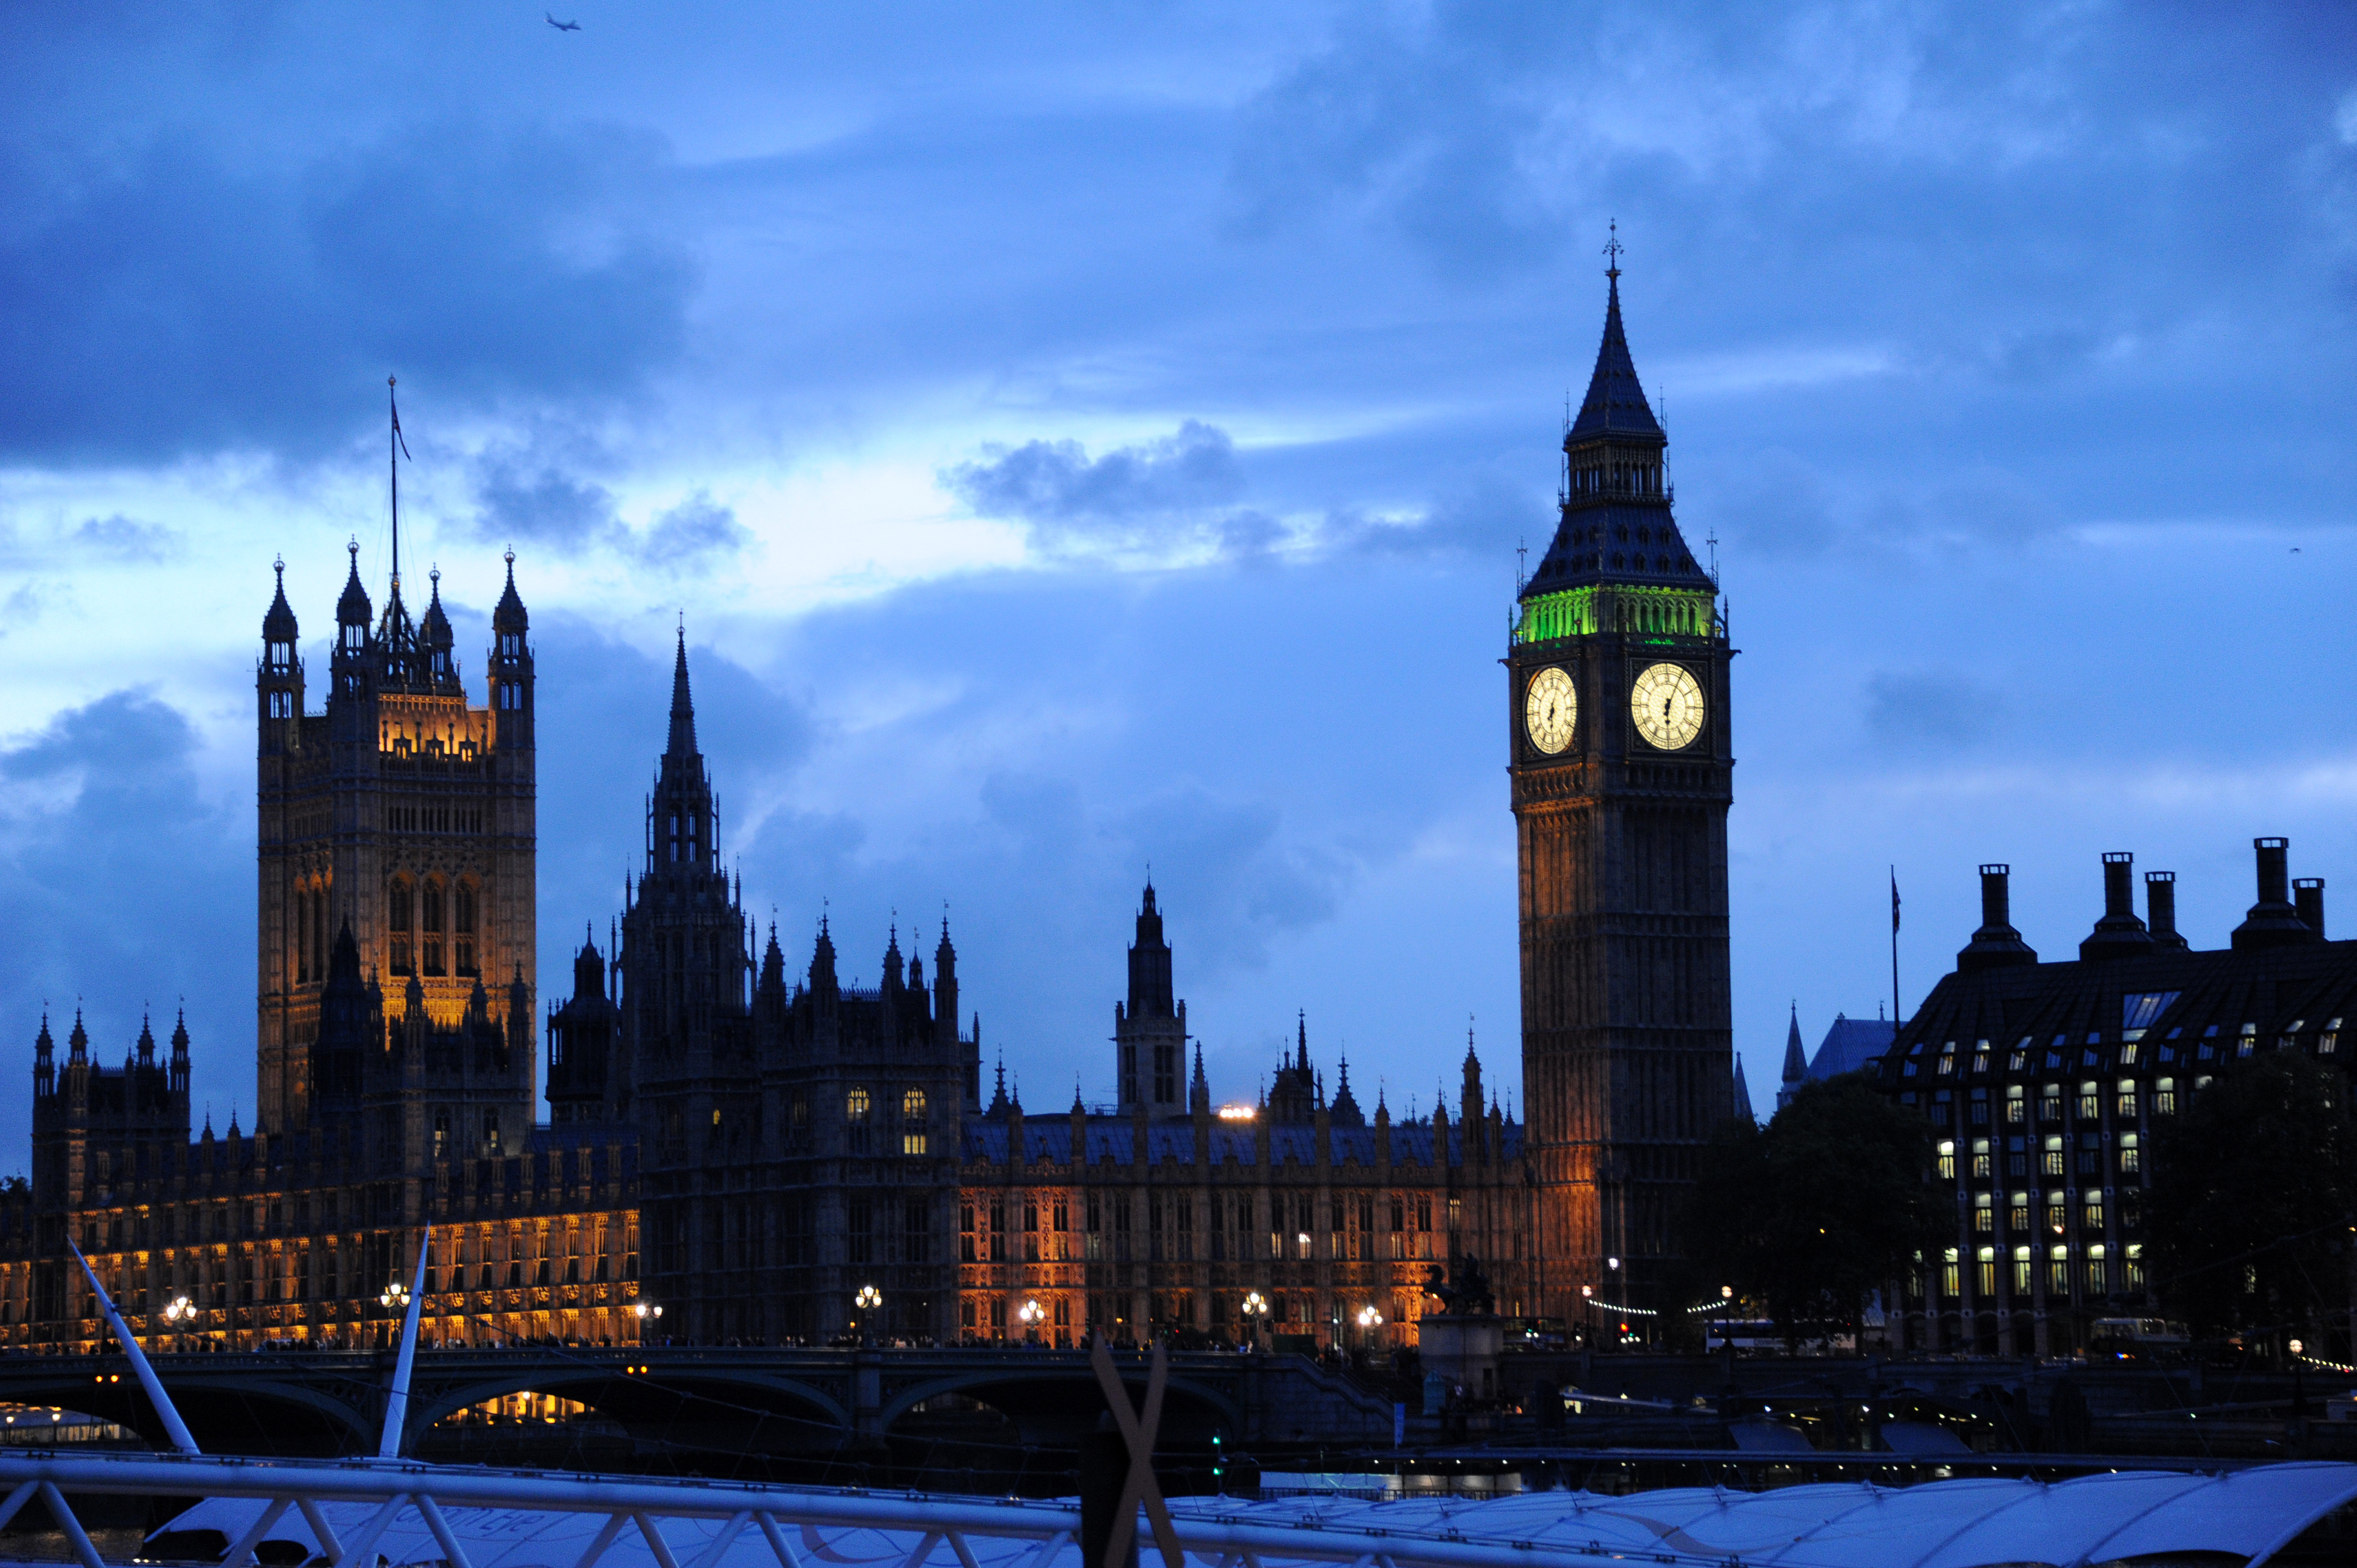 Вид на Вестминстерский дворец и Часовую башню с часами Биг-Бен в Лондоне. Фото: &copy; РИА Новости/Владимир Песня